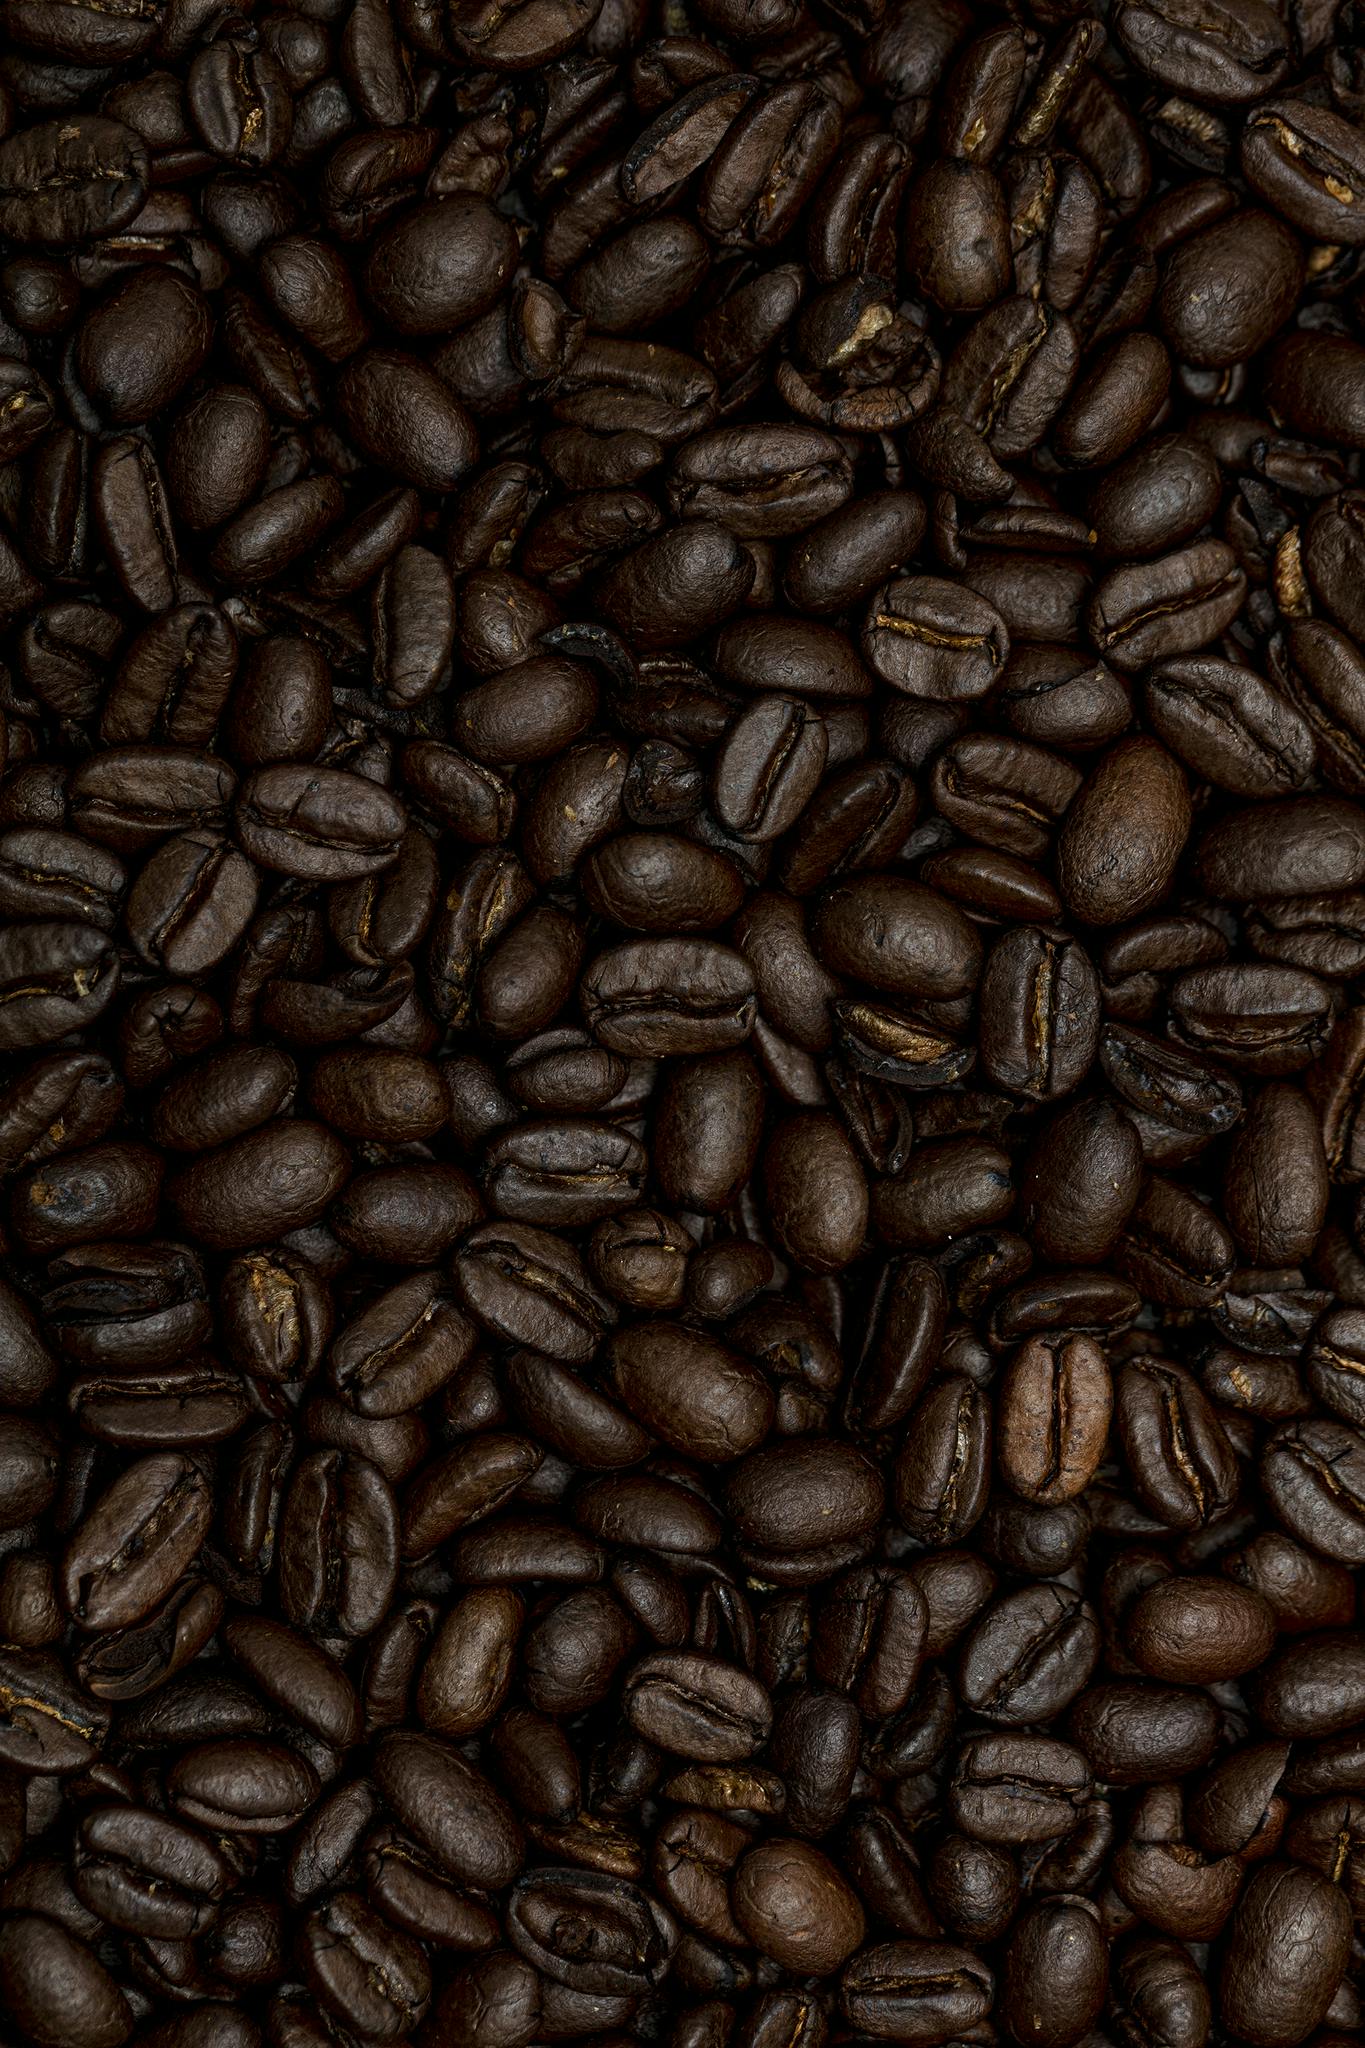 Kaffe 7292